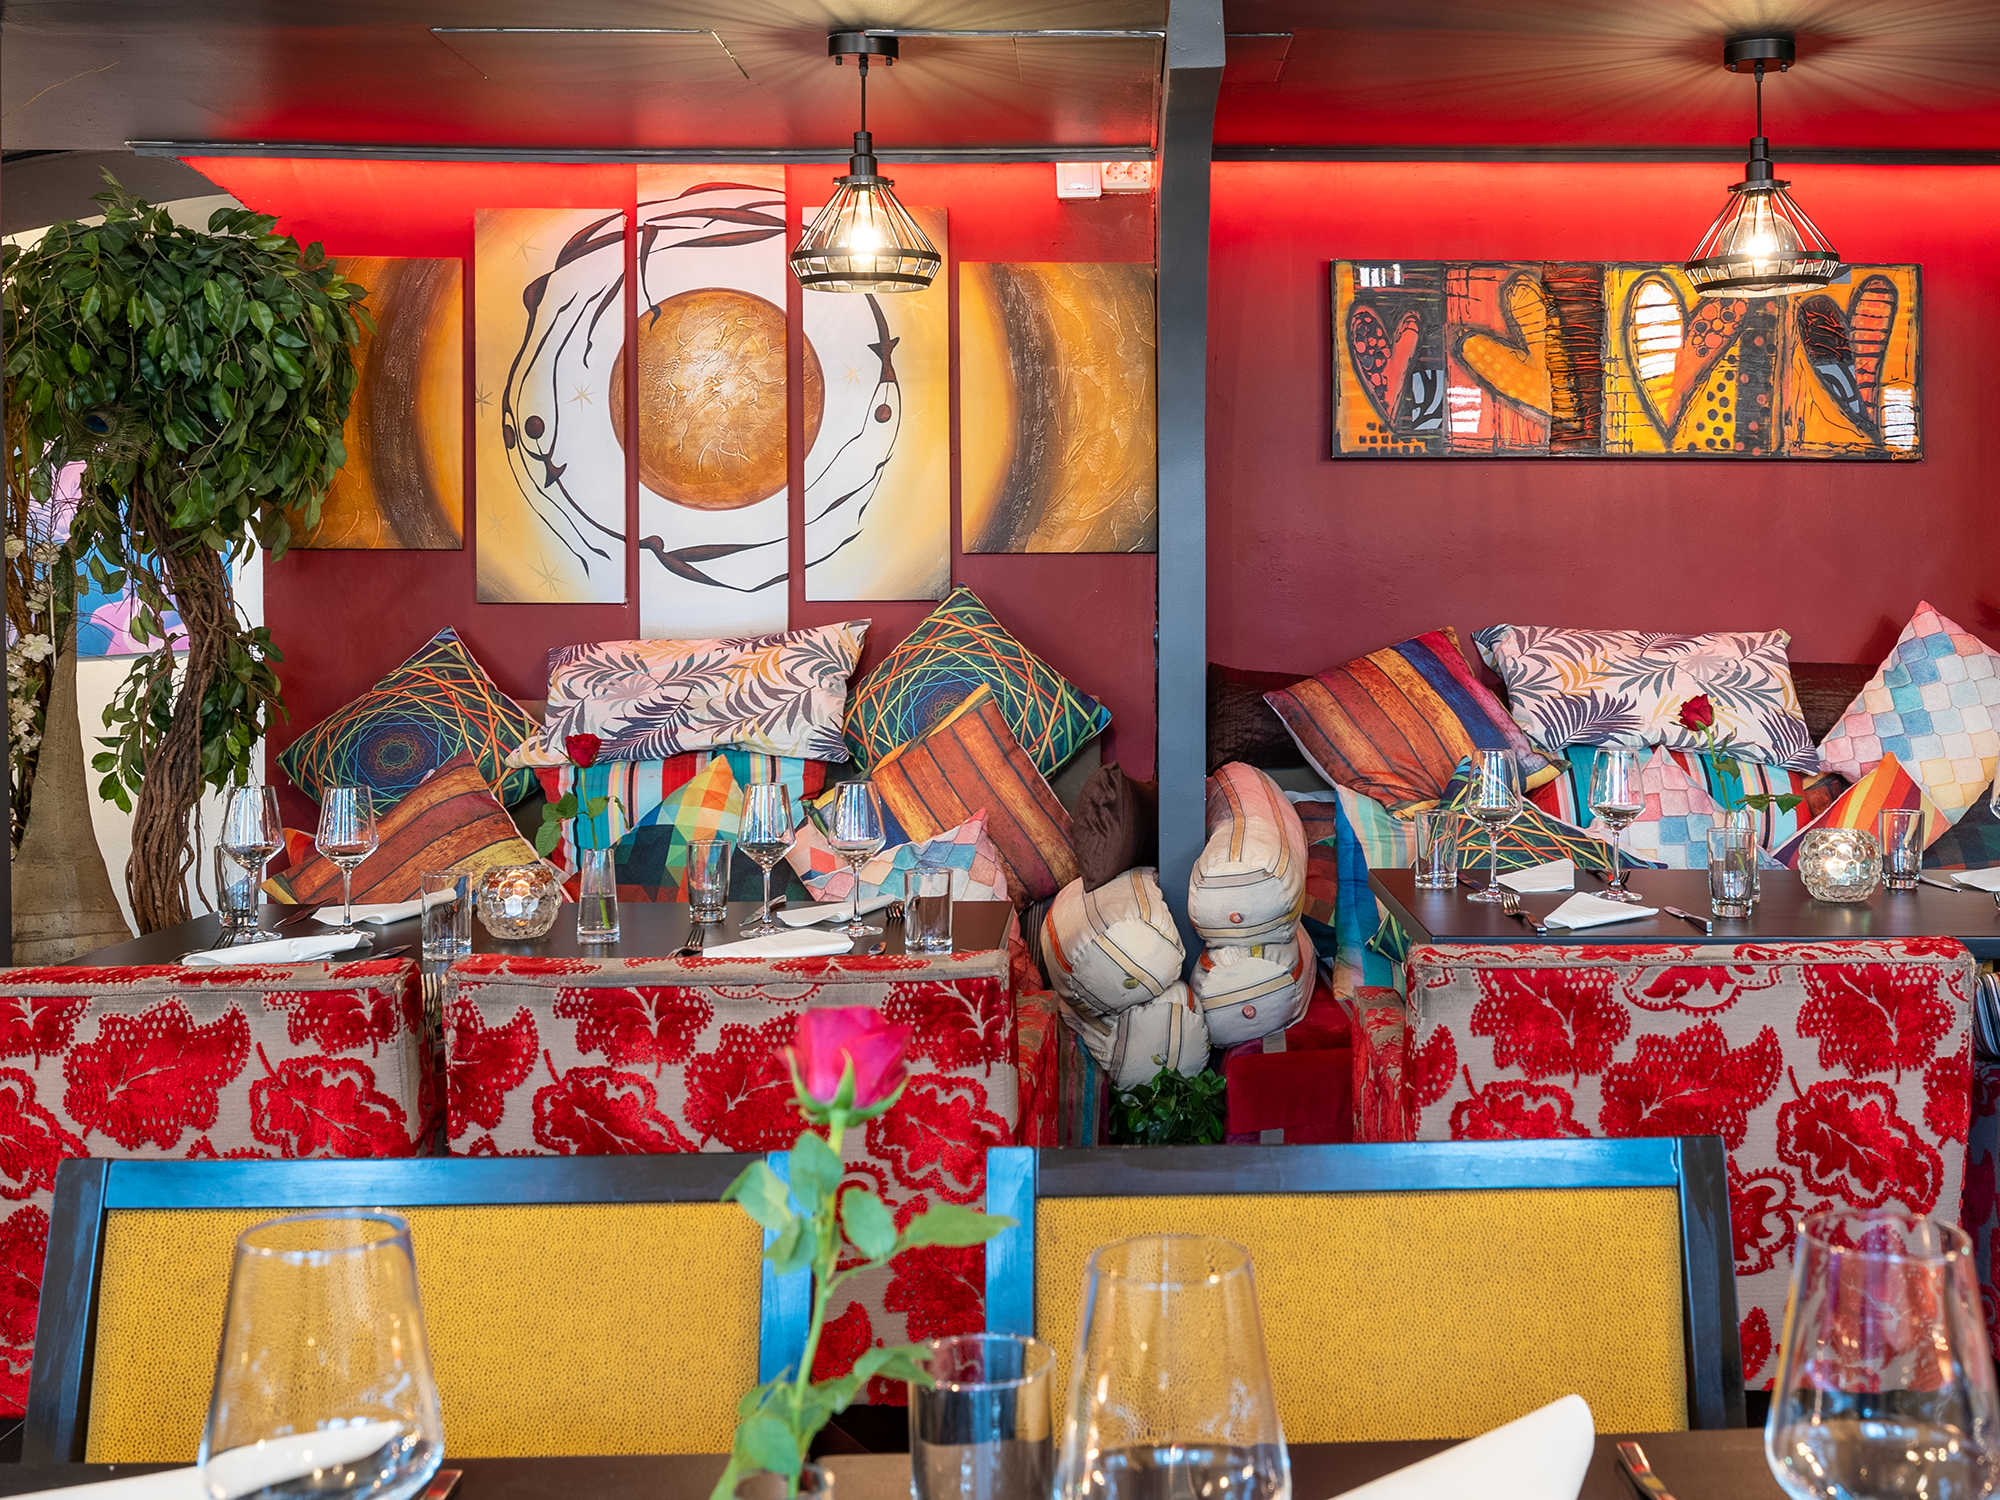 Restaurangsittmiljö med kuddar i olika färger och mönster, dukade bord och en trädplanta i rummets vänstra hörn